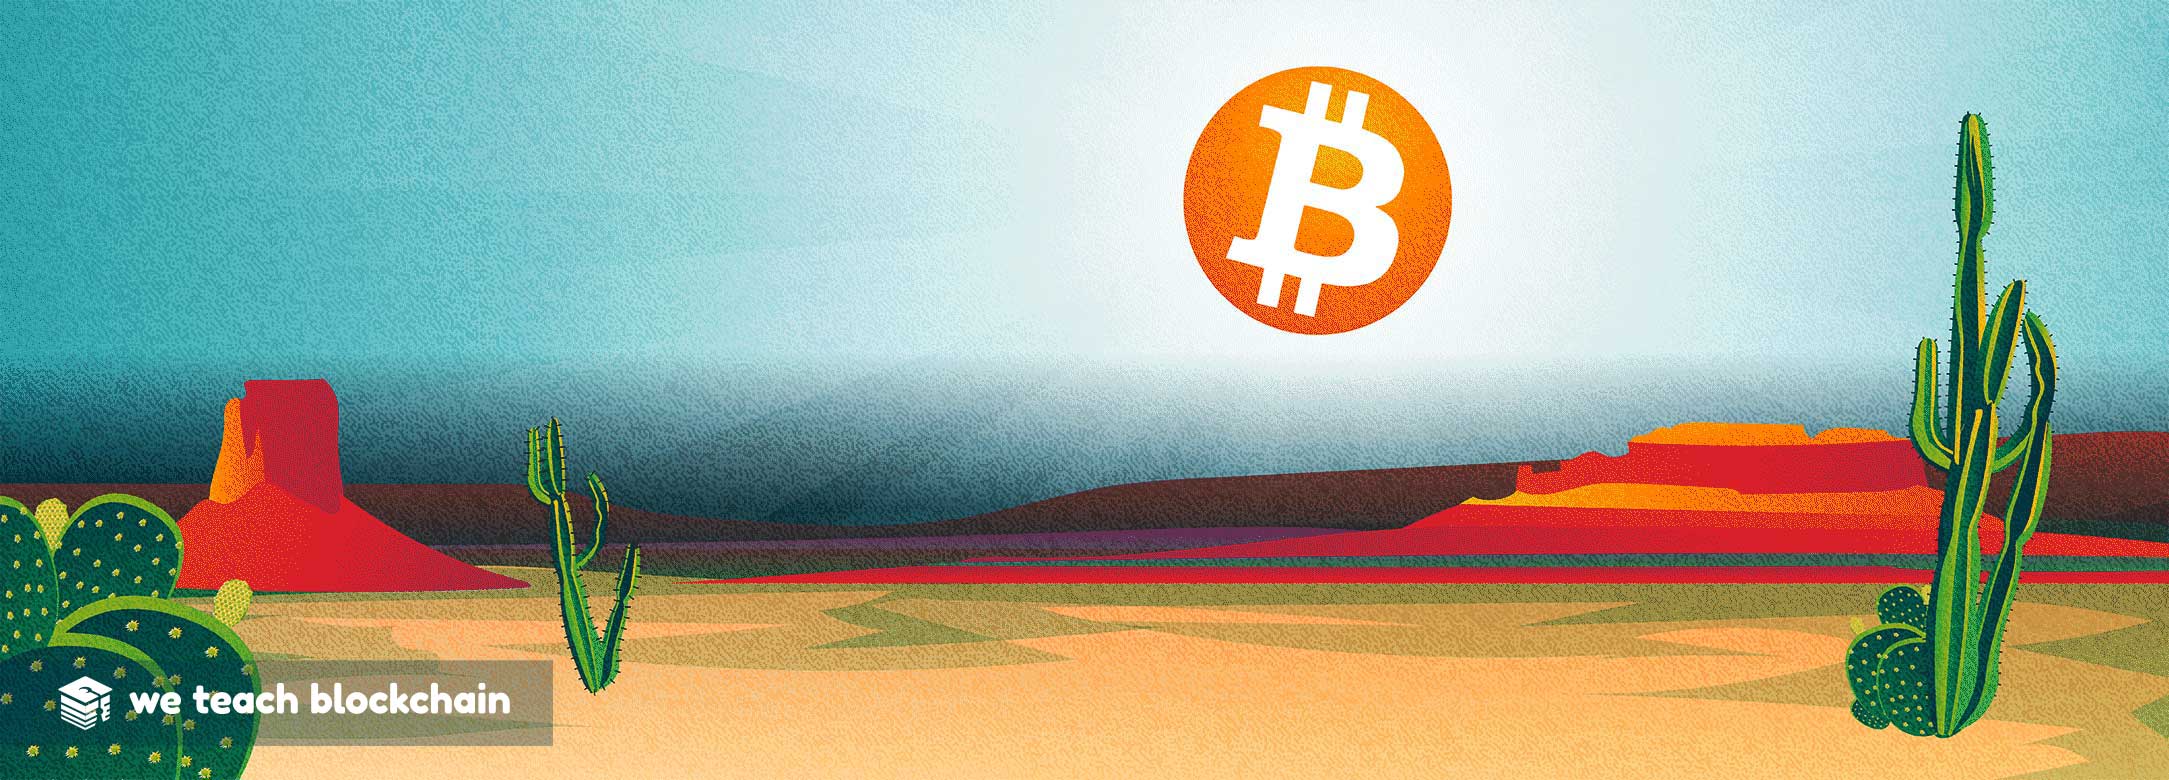 Bitcoin logo as the sun over a desert